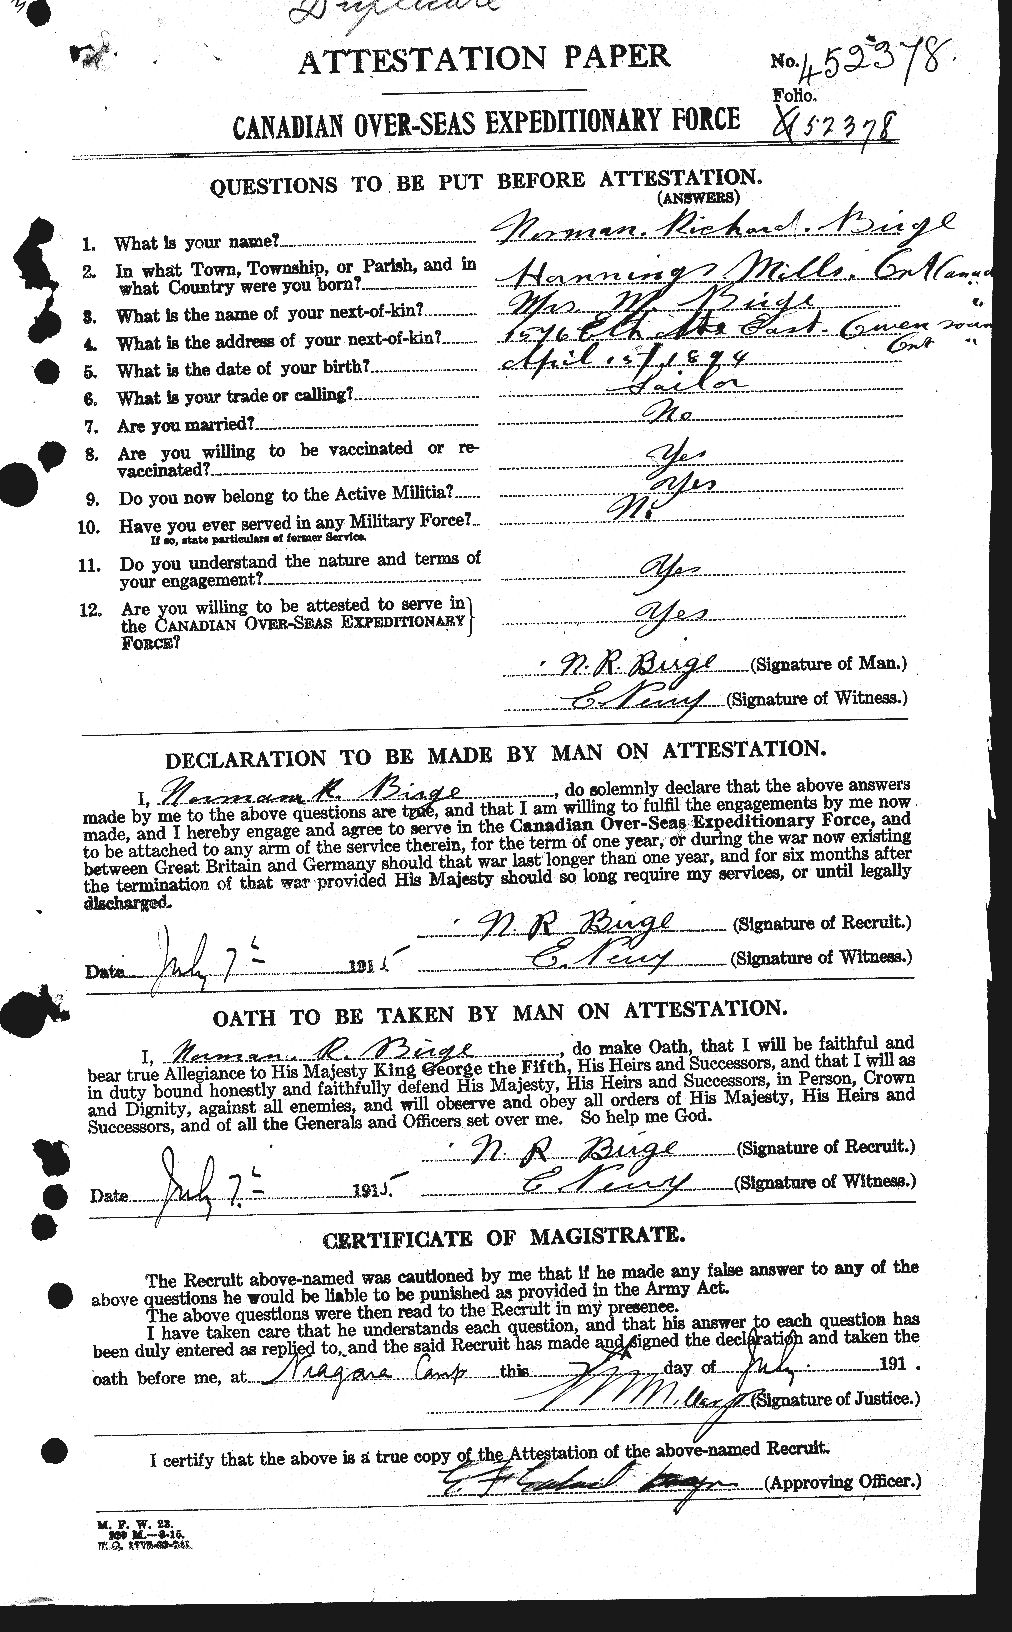 Dossiers du Personnel de la Première Guerre mondiale - CEC 243838a